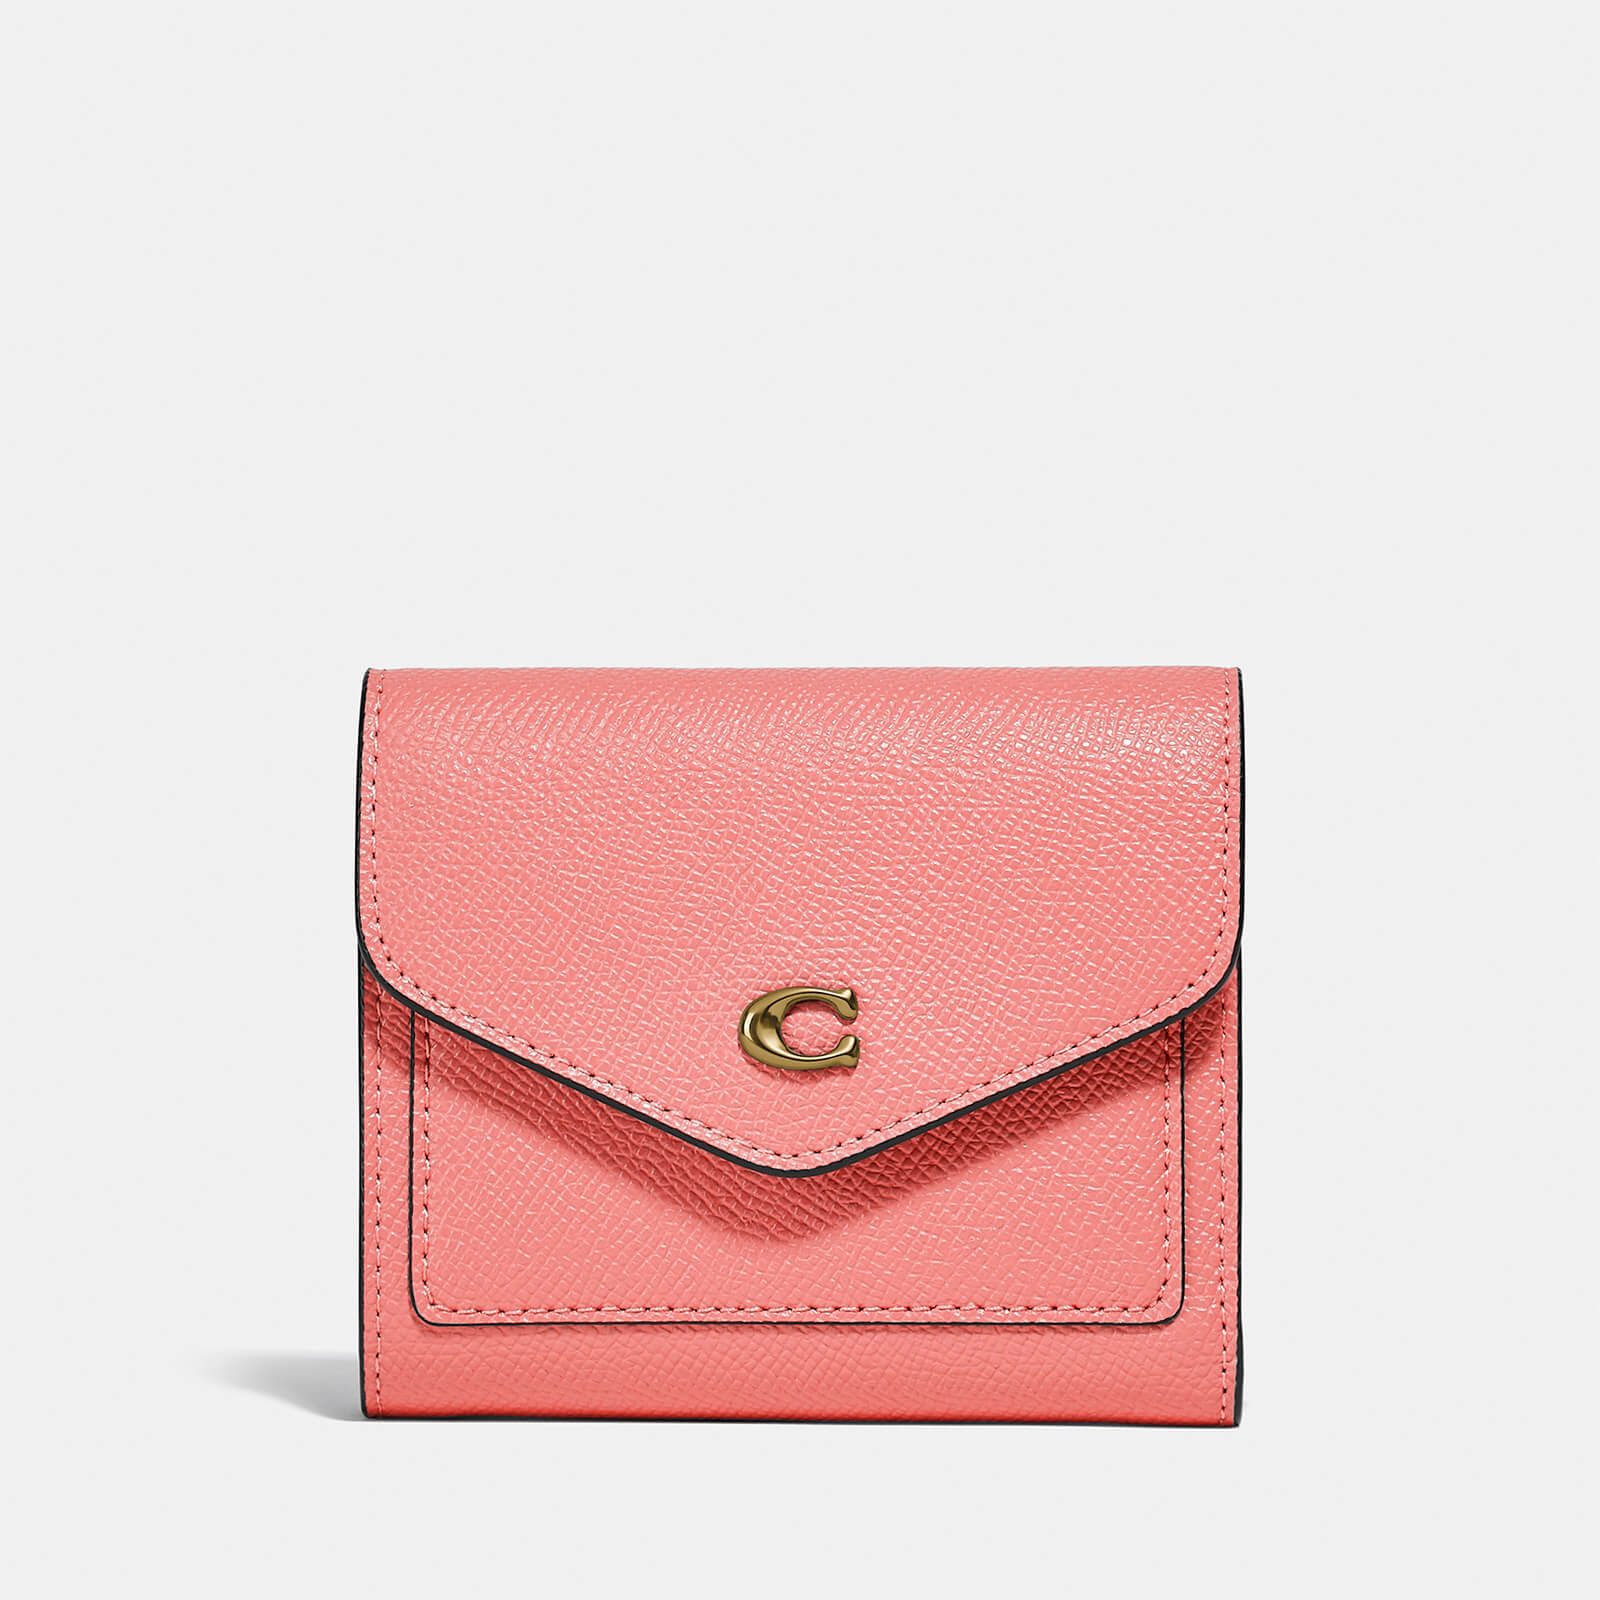 Coach Women's Crossgrain Leather Wyn Small Wallet - Candy Pink